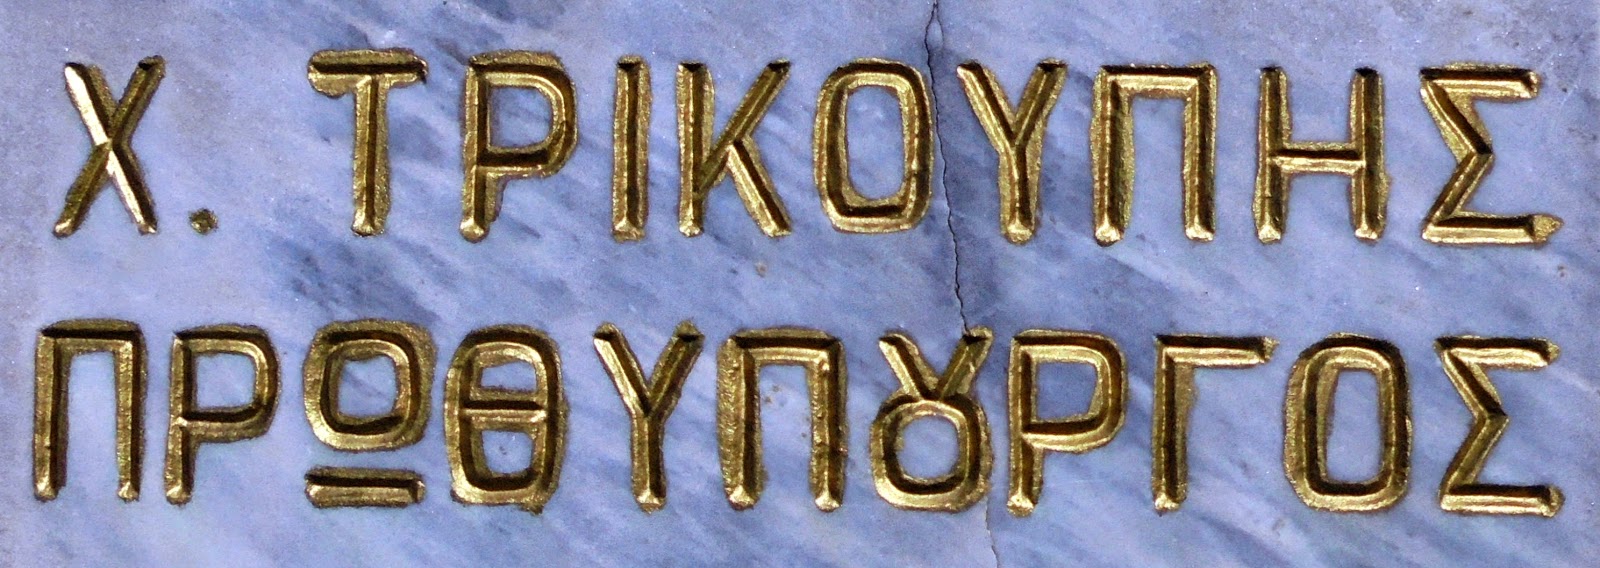 προτομή του Χαρίλαου Τρικούπη στο Μουσείο Ιστορίας και Τέχνης του Μεσολογγίου